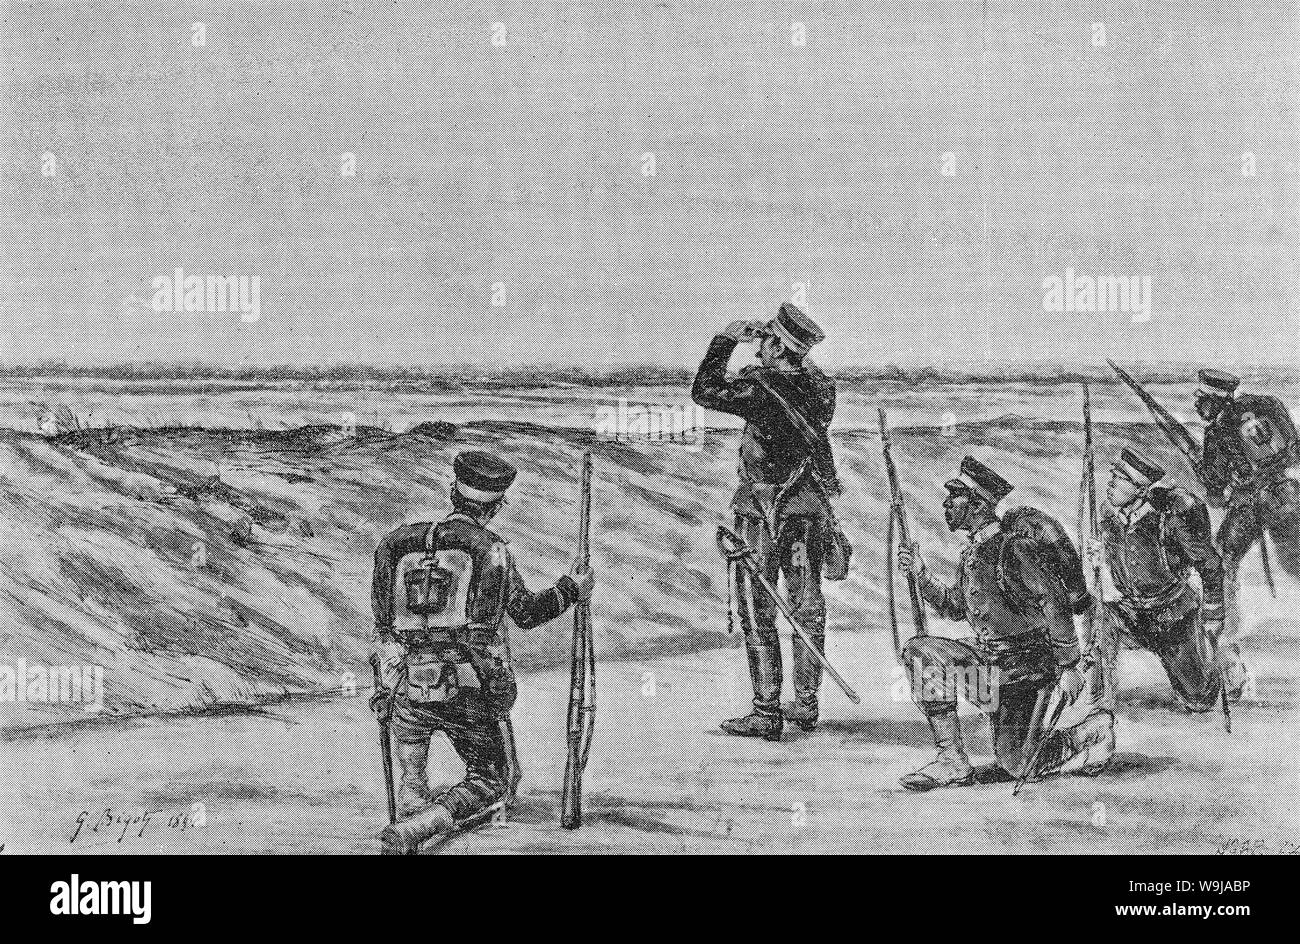 [ 1890 Japon - Première guerre sino-japonaise (1894-1895) ] - les troupes japonaises à Pyongyang, Corée, au cours de la première guerre sino-japonaise (1894-1895). La bataille de Pyongyang est la deuxième grande bataille terrestre de la guerre et a eu lieu le 15 septembre 1894 (27) L'ère Meiji. Publié dans l'hebdomadaire illustré en français Le Monde illustré le 15 décembre 1894 (27) L'ère Meiji. Art par l'artiste français Georges Ferdinand Bigot (1860-1927), célèbre pour ses caricatures de la vie dans la période Meiji au Japon. 19e siècle vintage illustration de journal. Banque D'Images